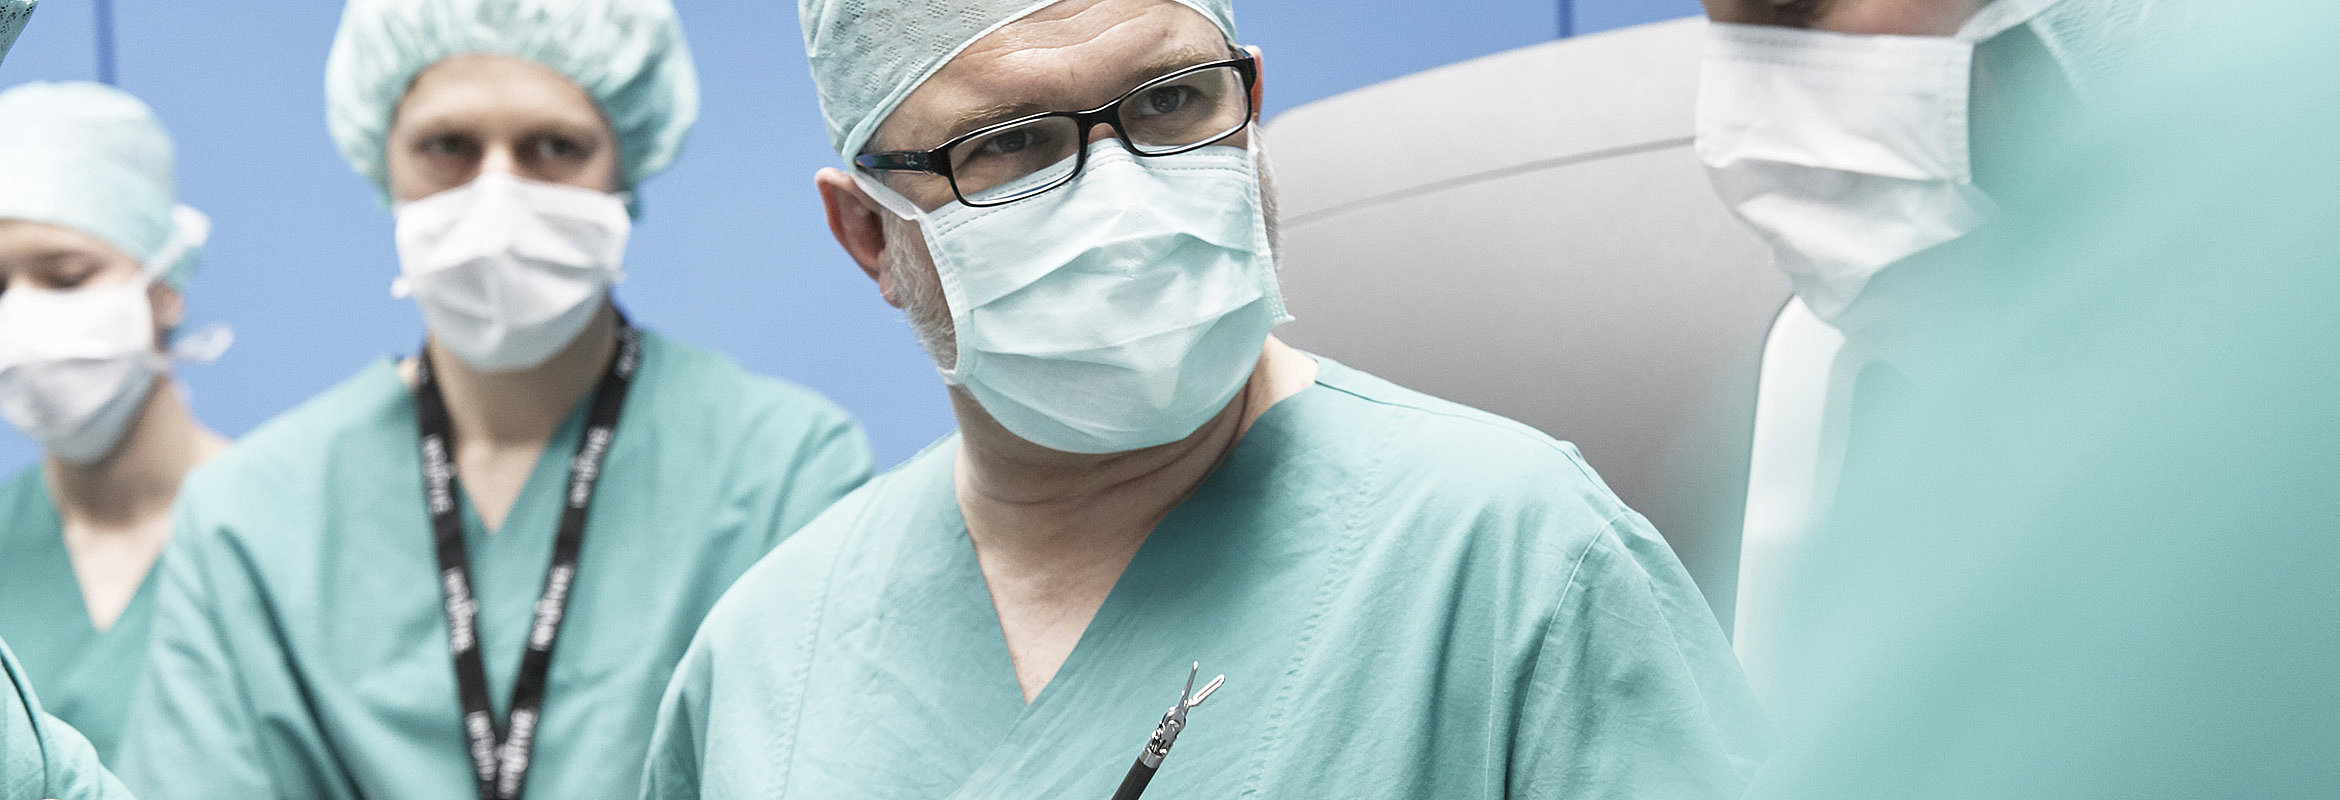 Priv.-Doz. Dr. med. Dr. med. habil. Christian Mönch, Chefarzt der Klinik für Allgemein- und Gefäßchirurgie in Kusel 